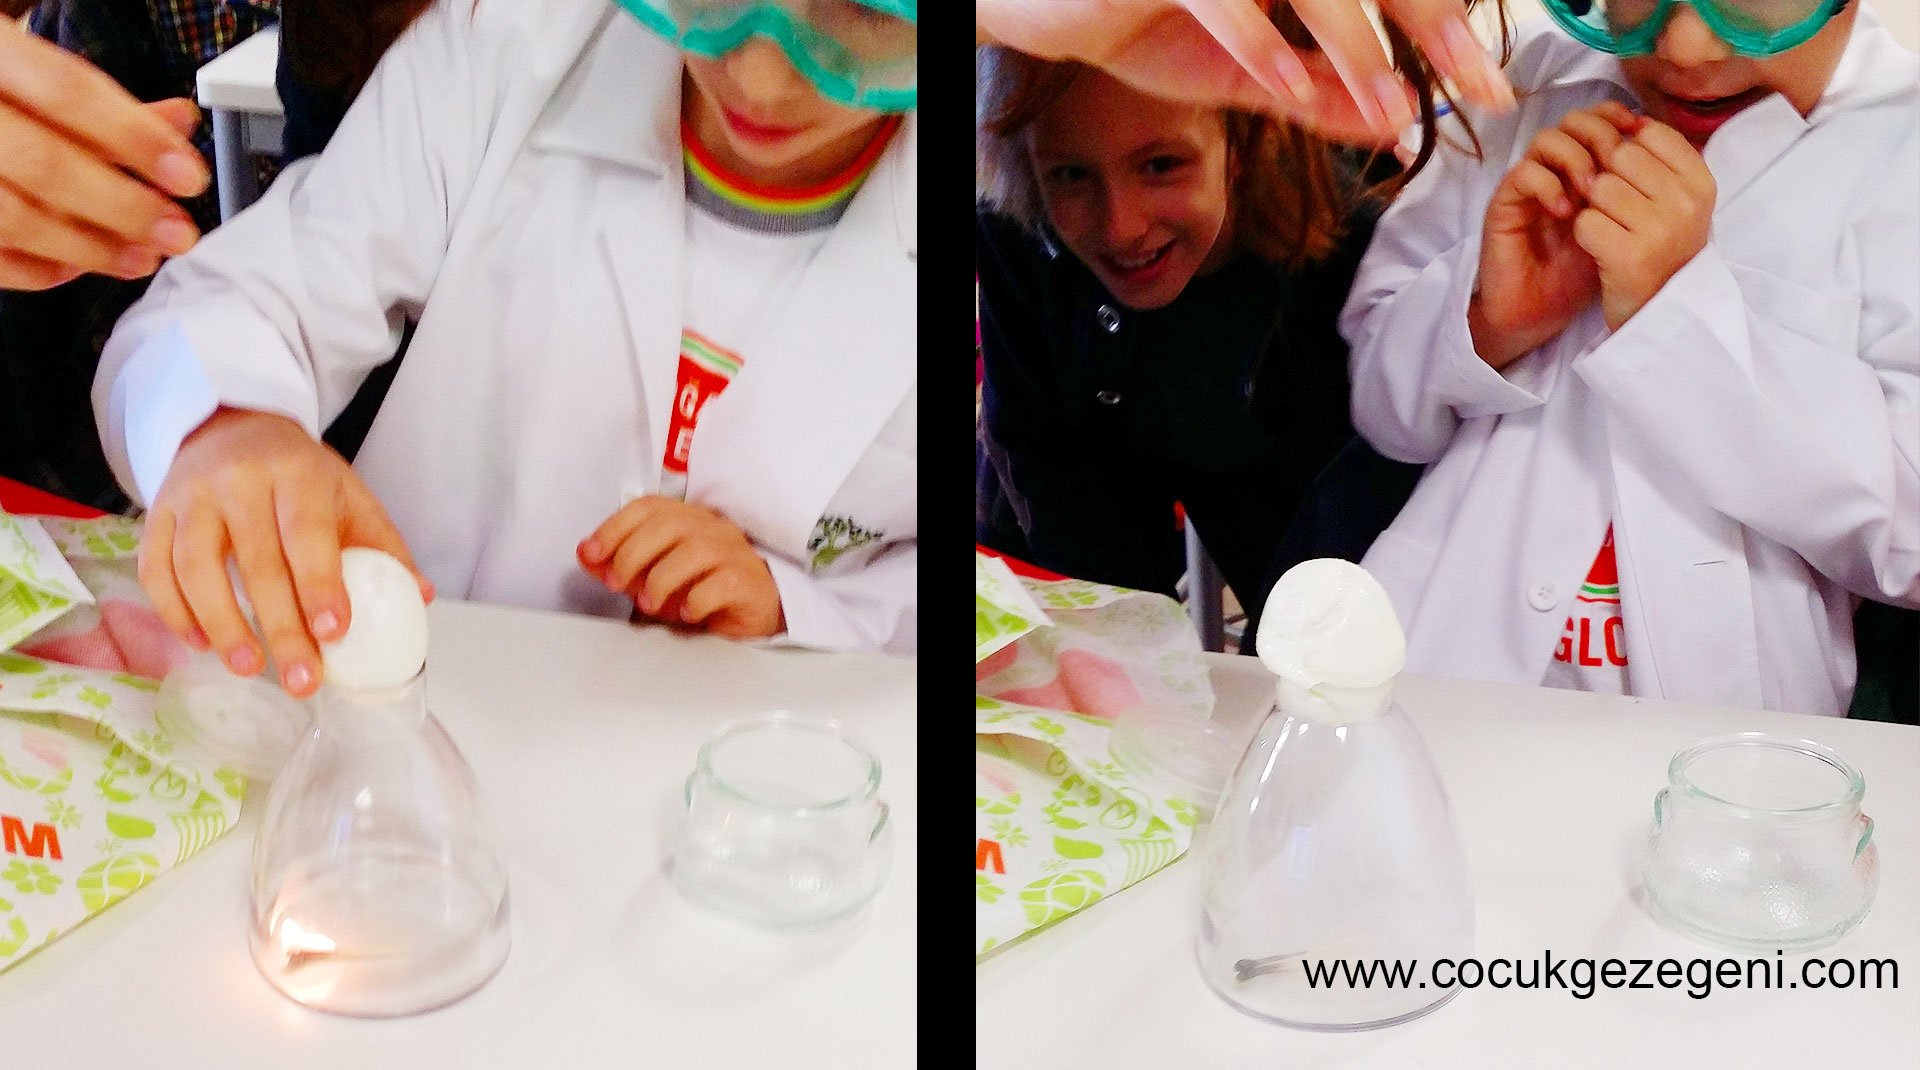 yumurtayı şişeye sokma deneyi - Evde yapılabilecek kolay okul öncesi deneyler